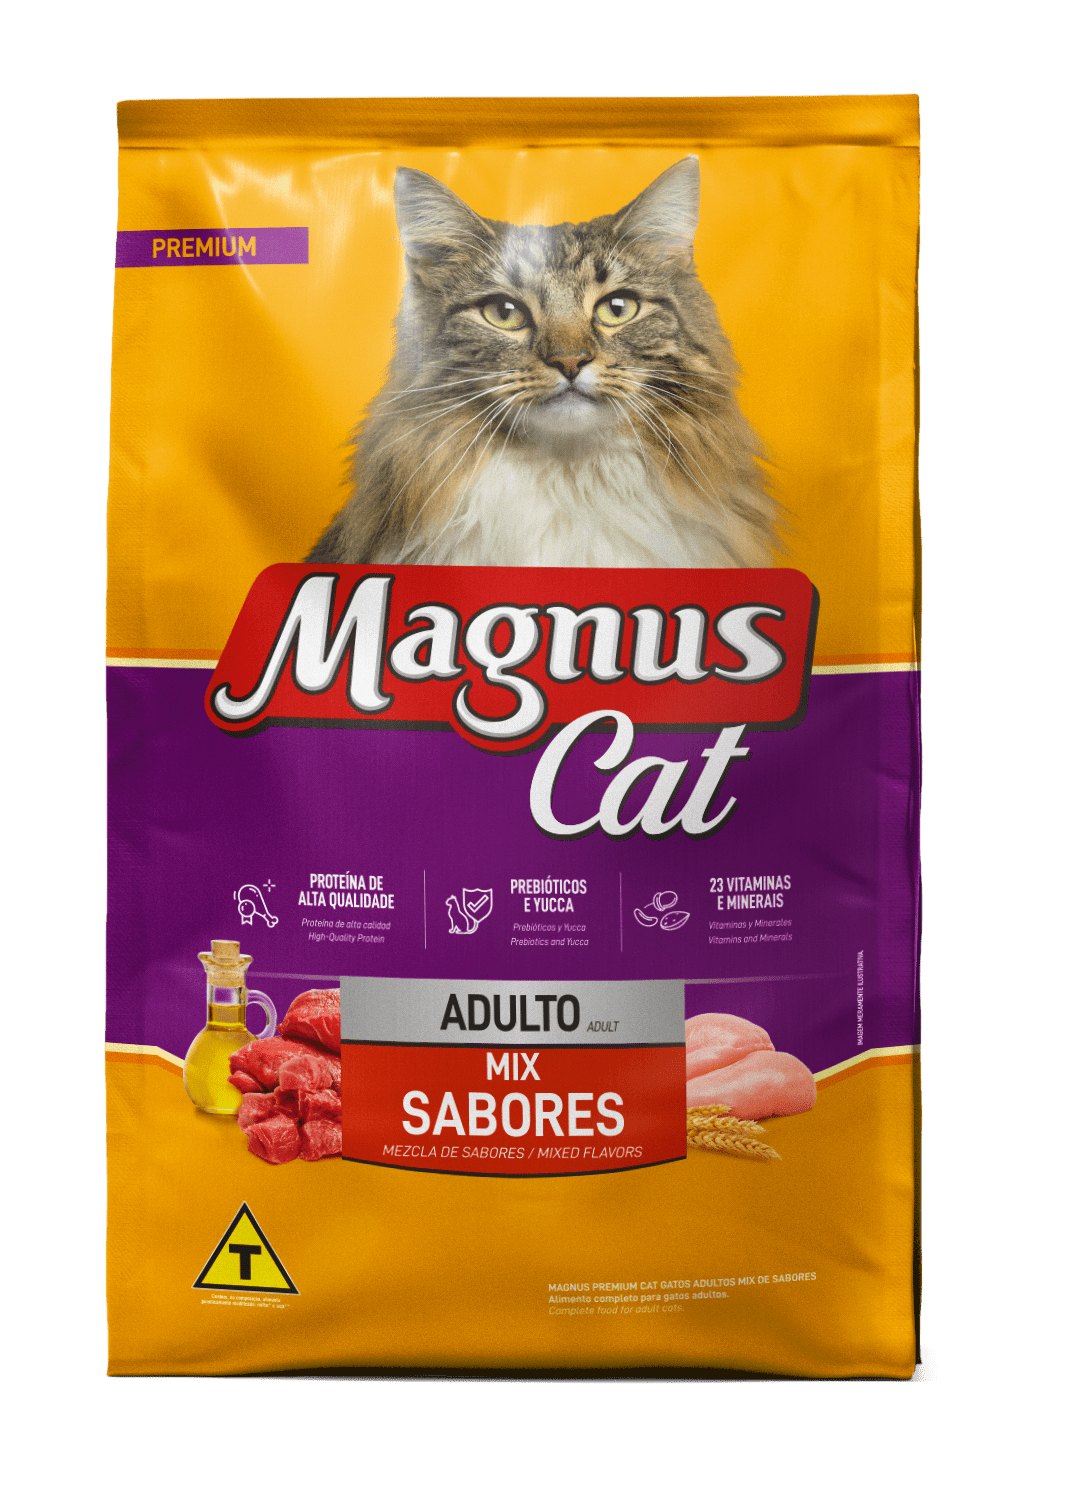 Magnus Premium Gatos Adultos Mix de Sabores